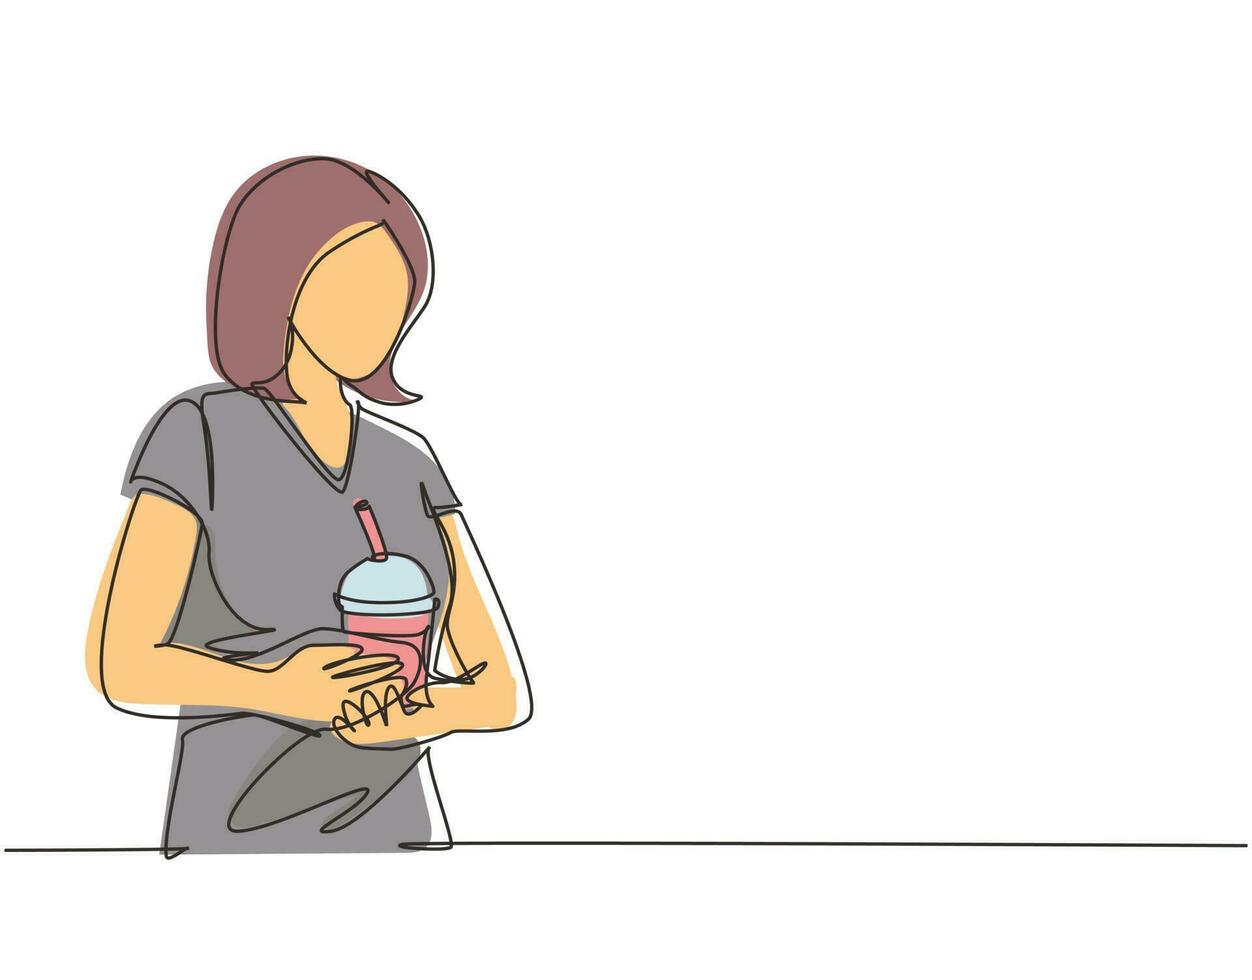 kontinuerlig en rad ritning ung glad kvinna dricker en plast kopp bubbla mjölk te. honan njuter av bubble milk tea med gatumat på nattmarknaden. enkel rad rita design vektorillustration vektor